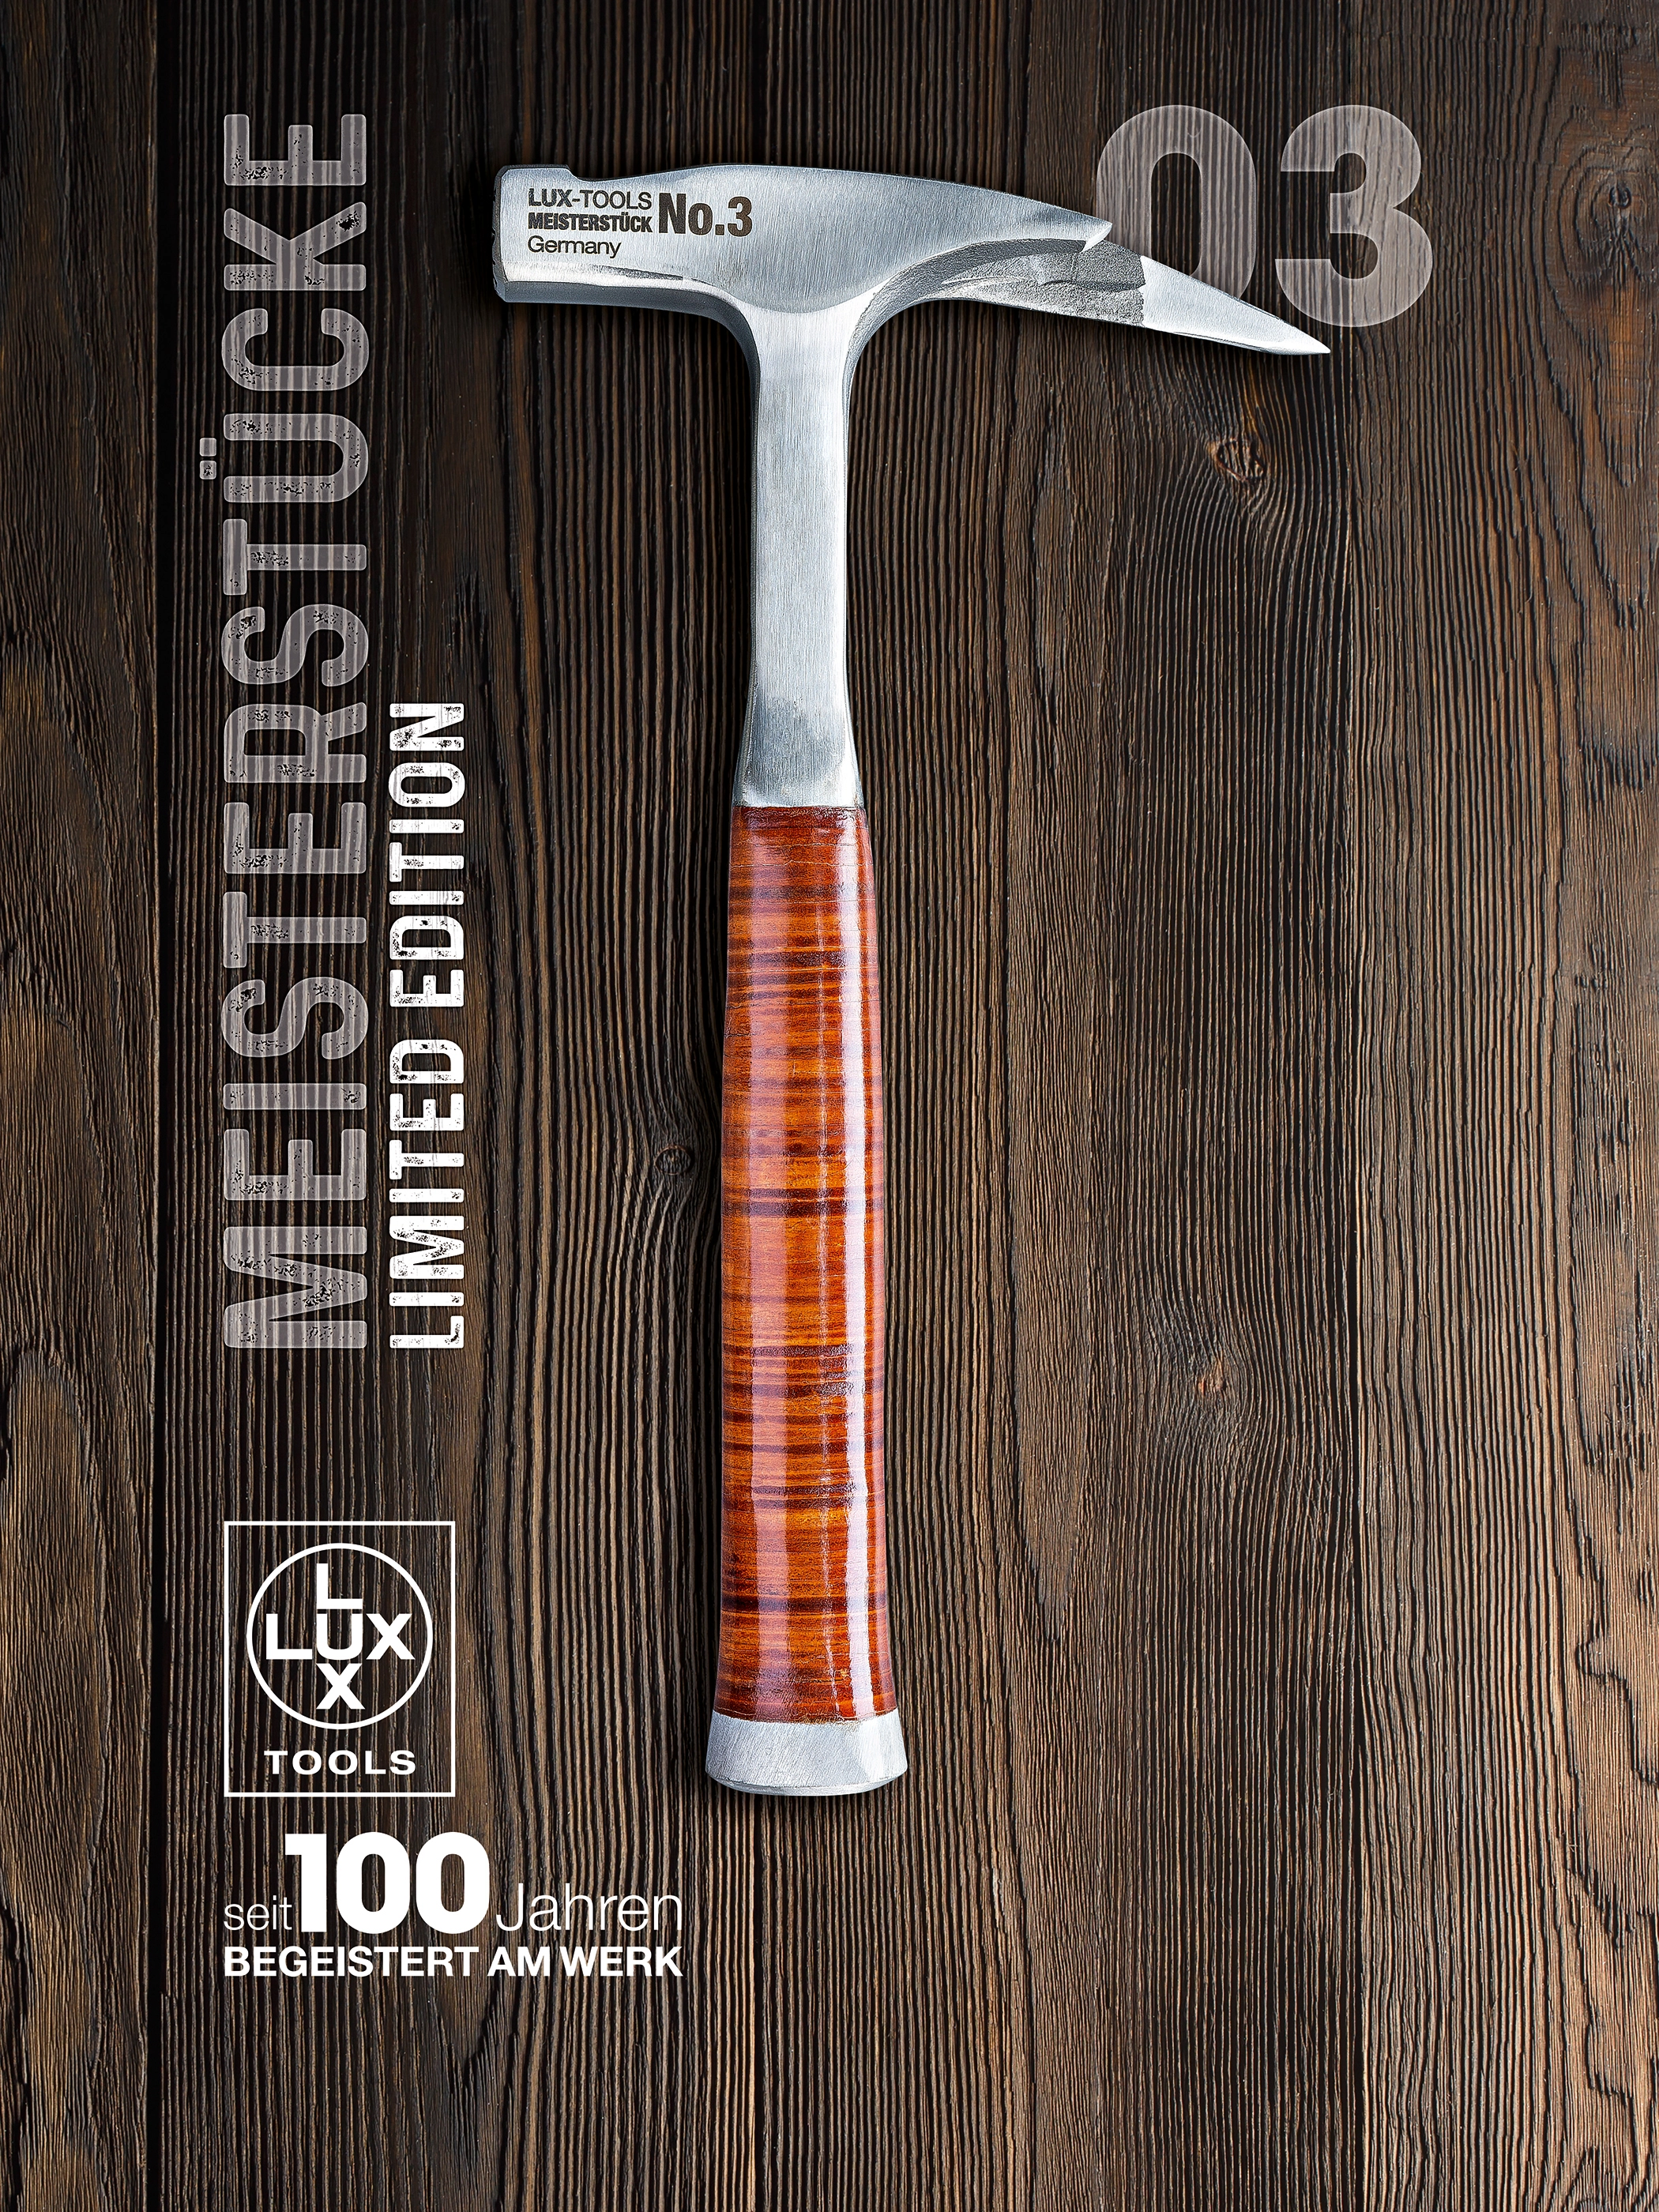 LUX Latthammer 600 g - Meisterstück No. 3 (Limited Edition) kaufen bei OBI